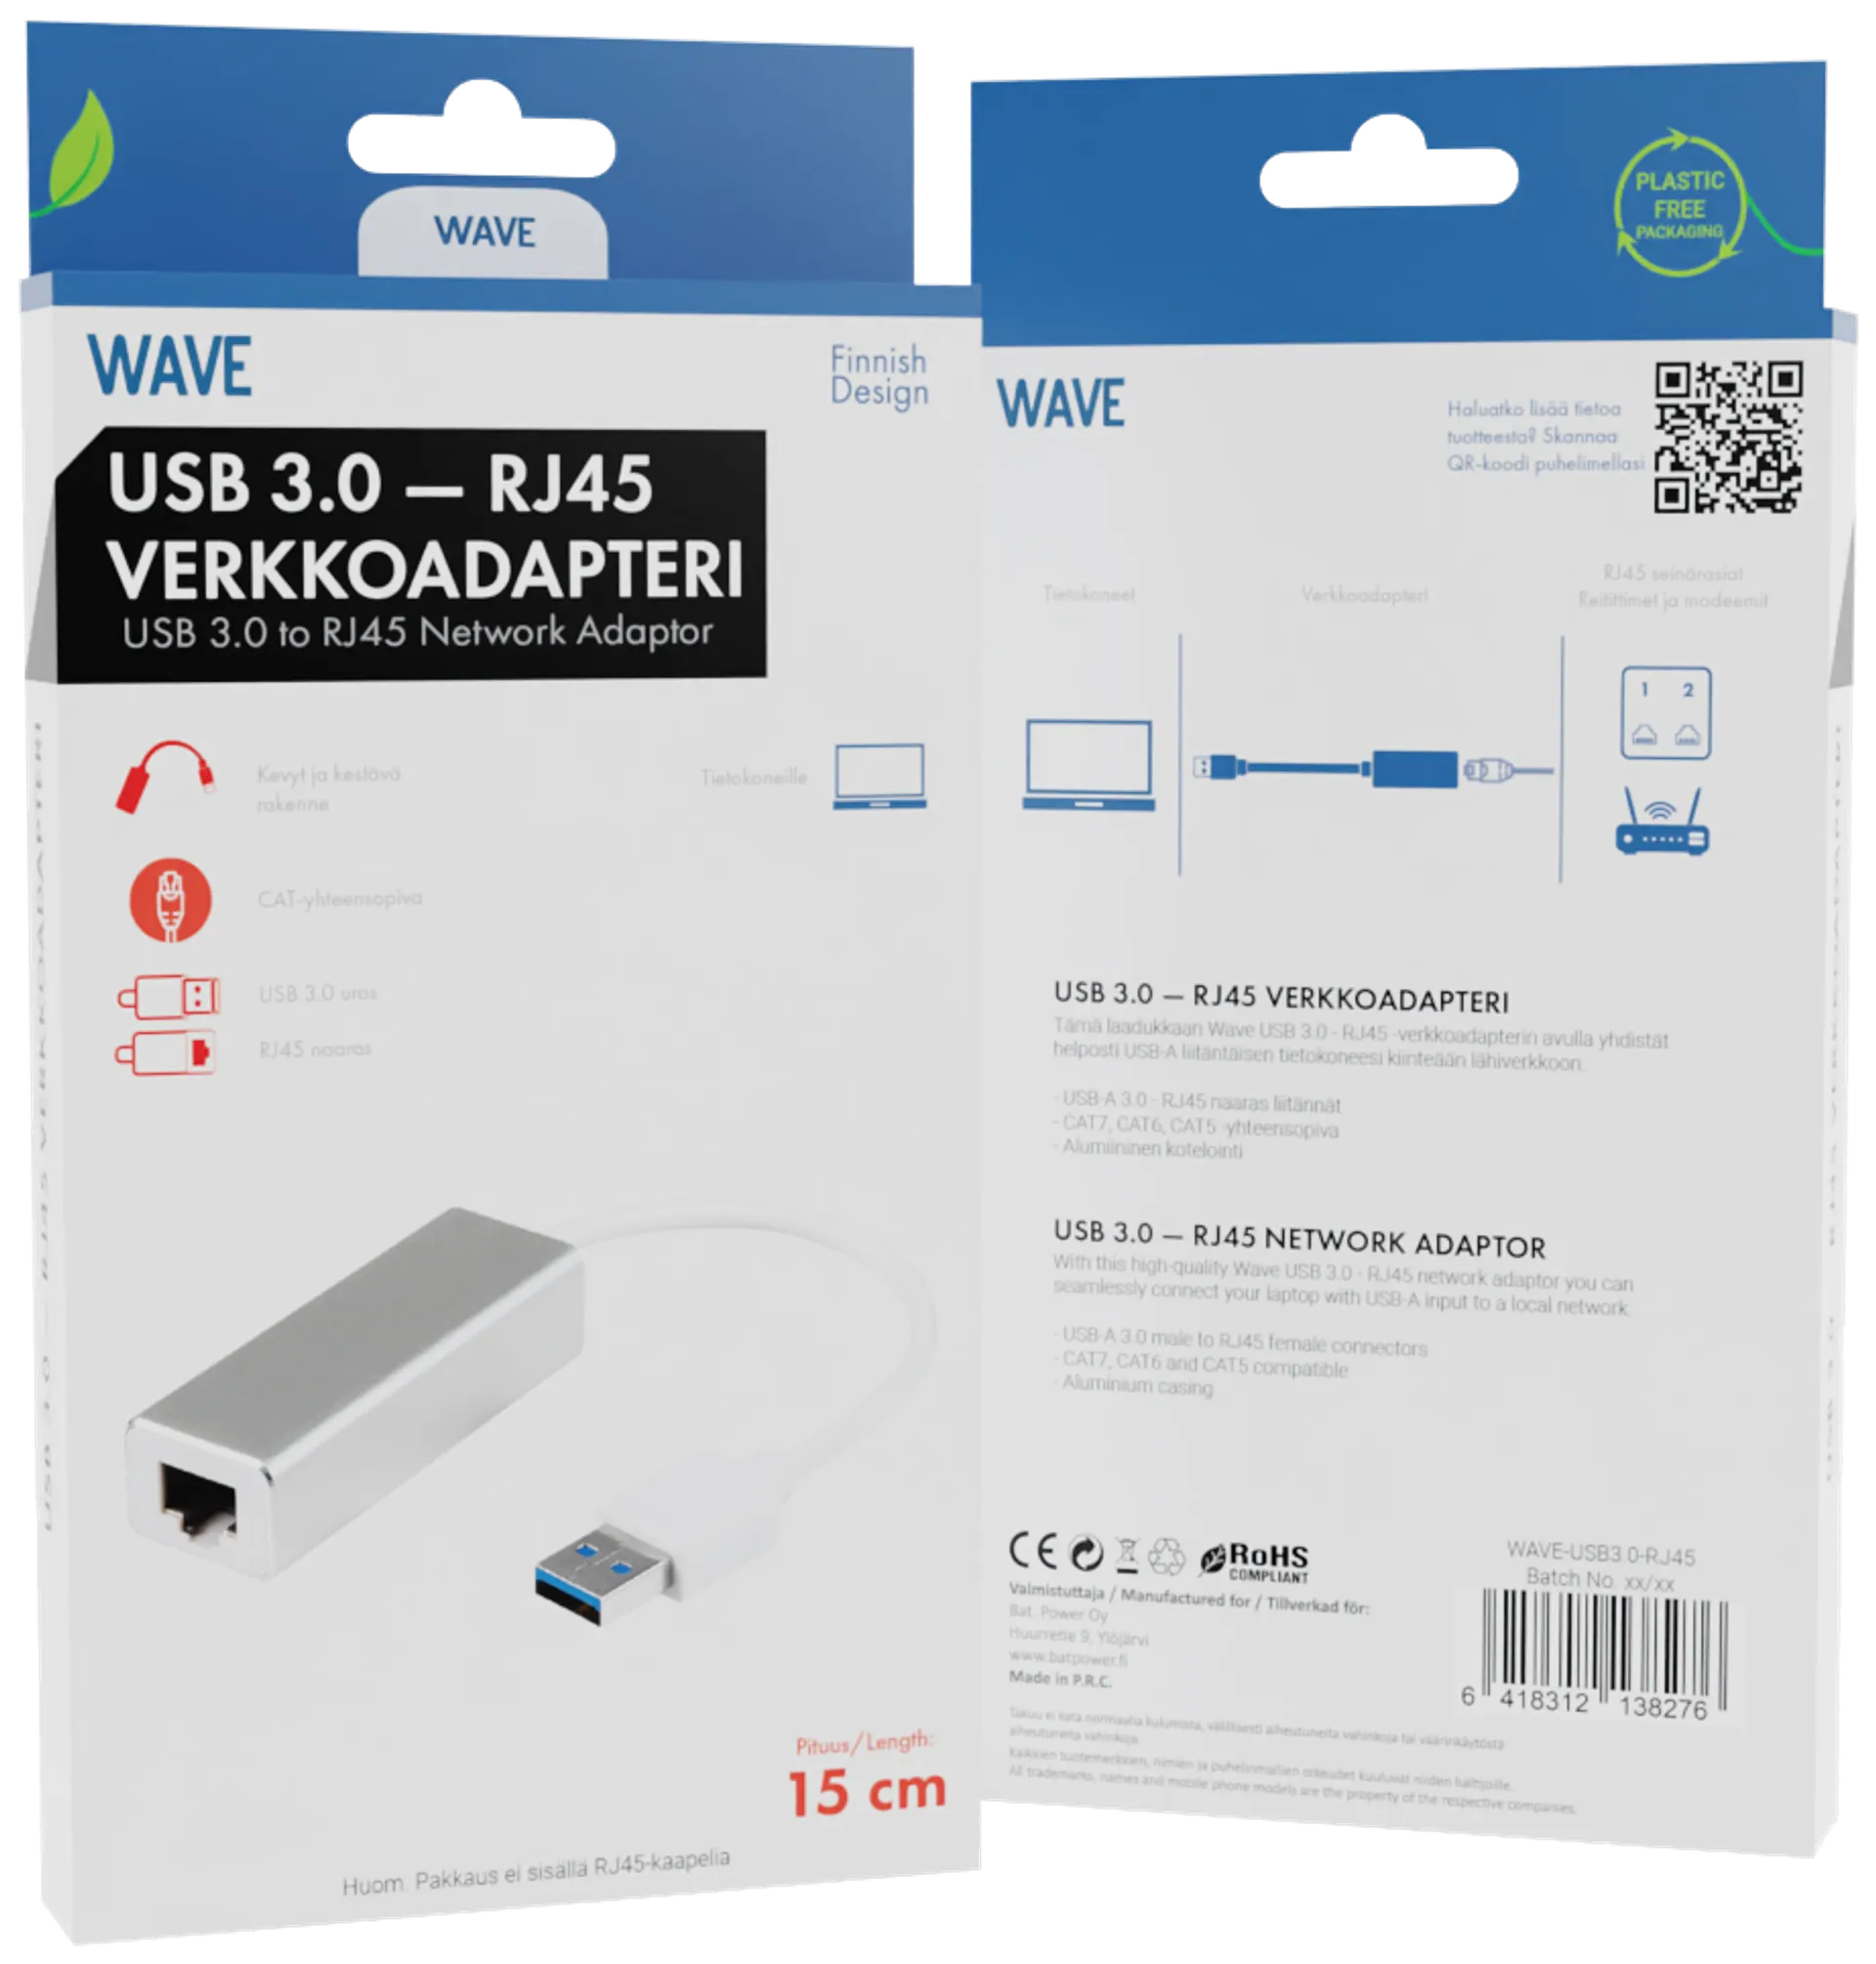 Wave USB 3.0 uros - RJ45 naaras verkkoadapteri, 15cm, Hopea/Valkoinen - 2